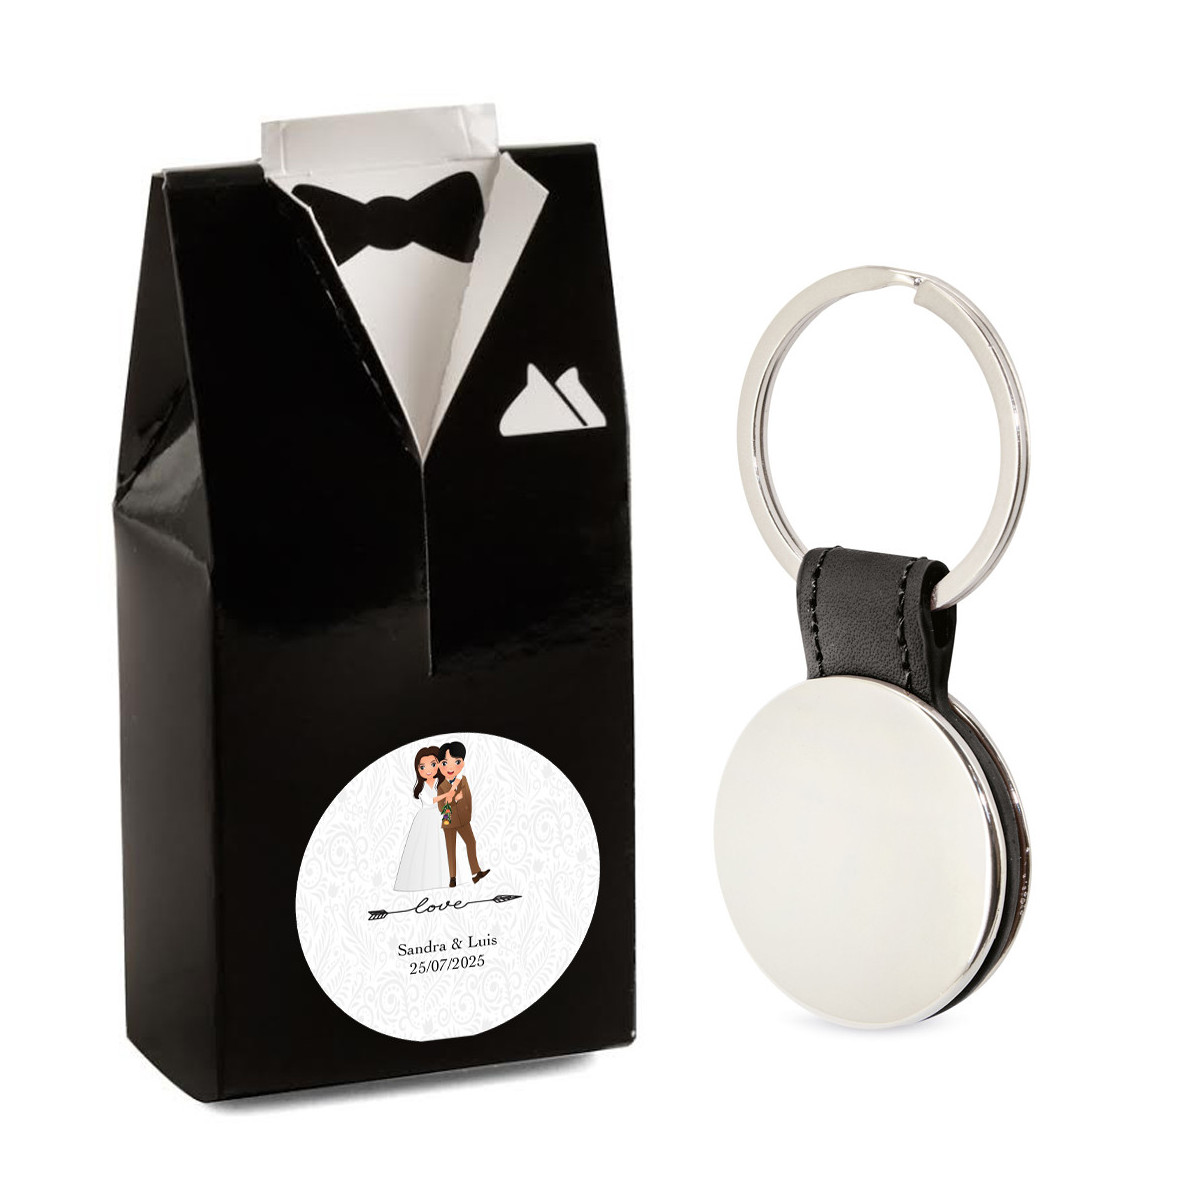 Elegante portachiavi da uomo in confezione regalo dal design smoking e adesivo nuziale personalizzabile